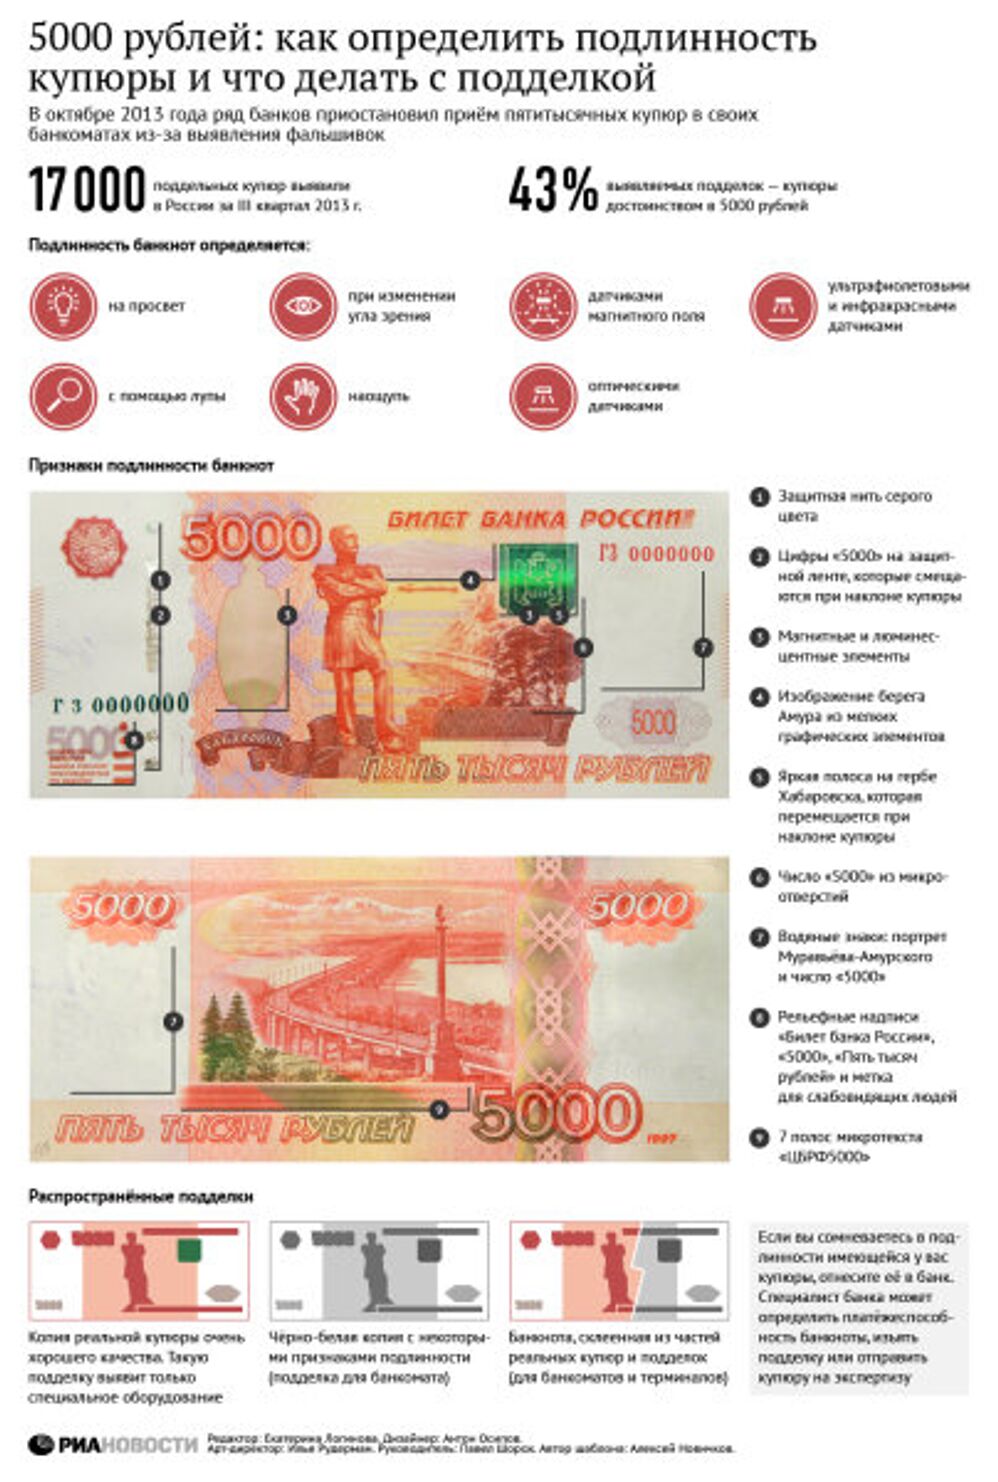 5000 рублей: как определить подлинность купюры и что делать с подделкой